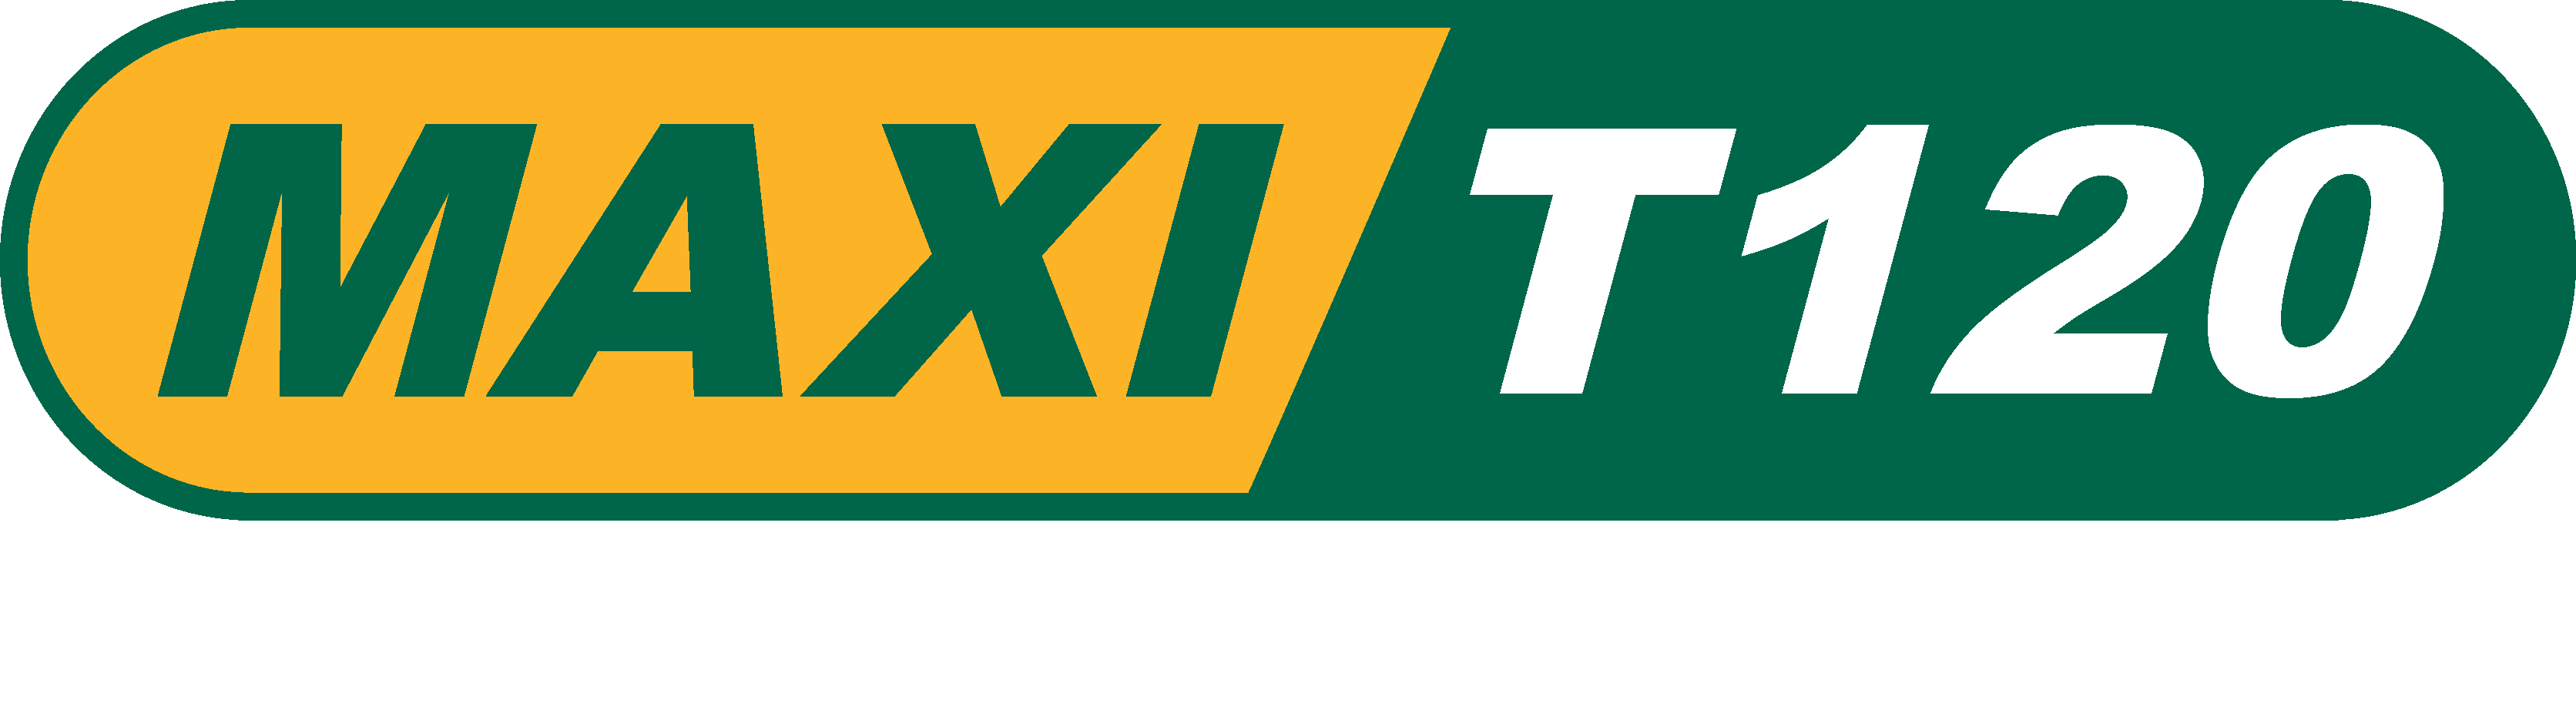 Maxi T120 slogan_white 1